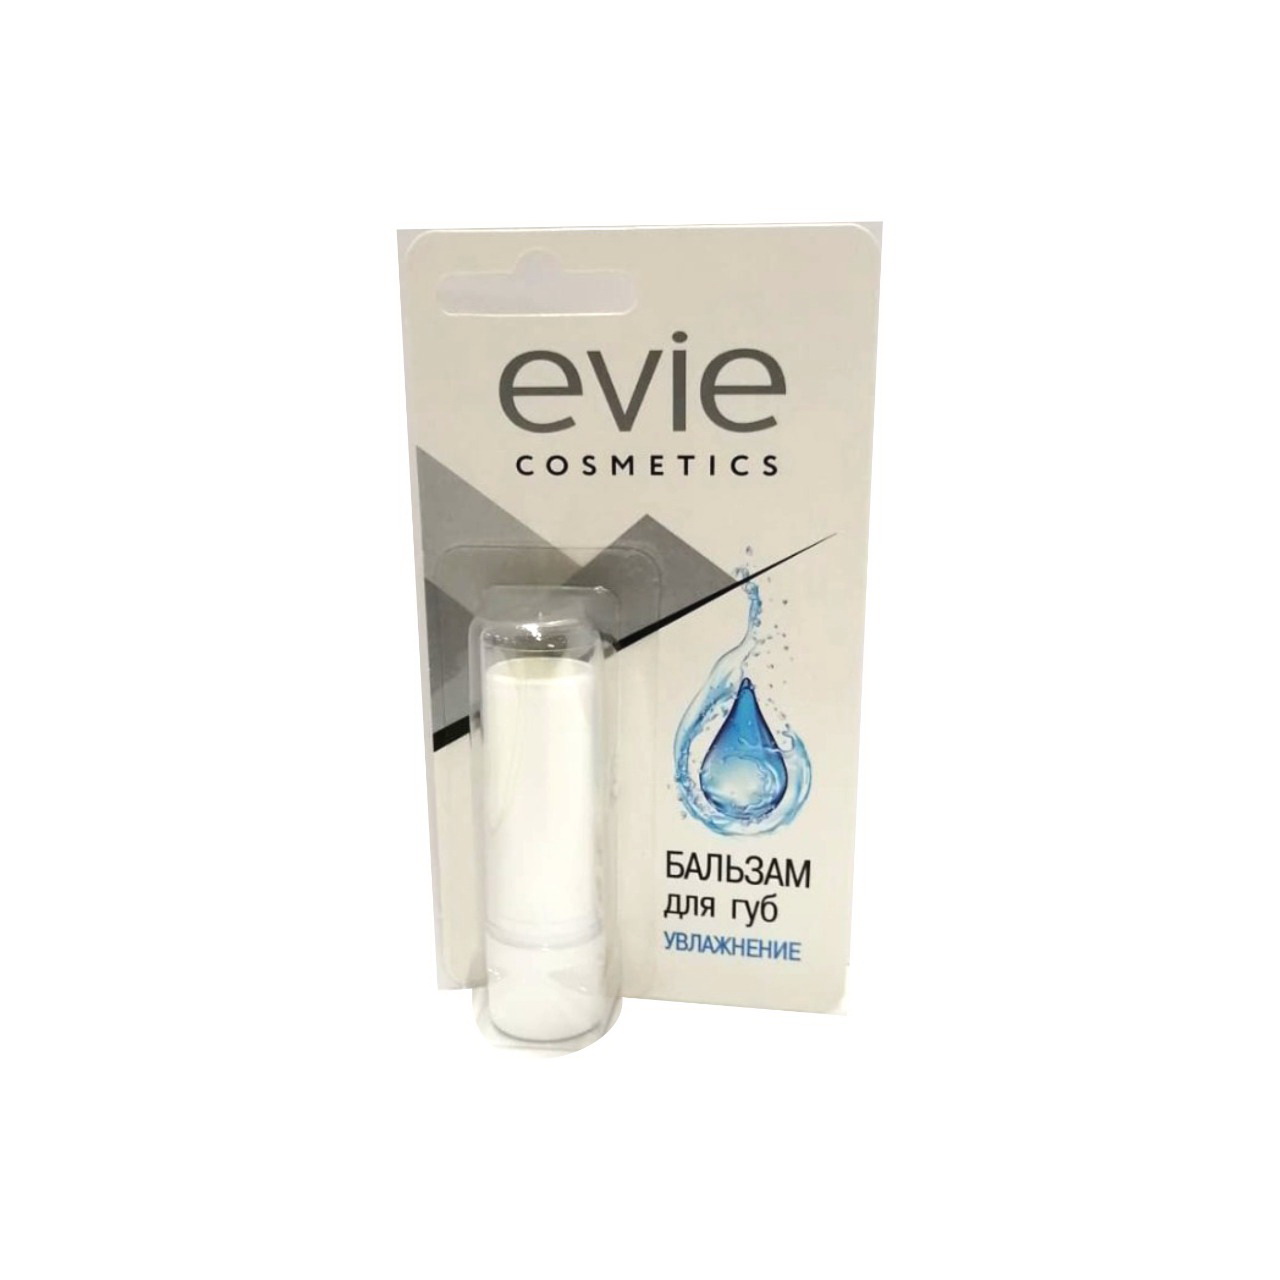 Evie cosmetics бальзам для губ увлажнение 3,7г